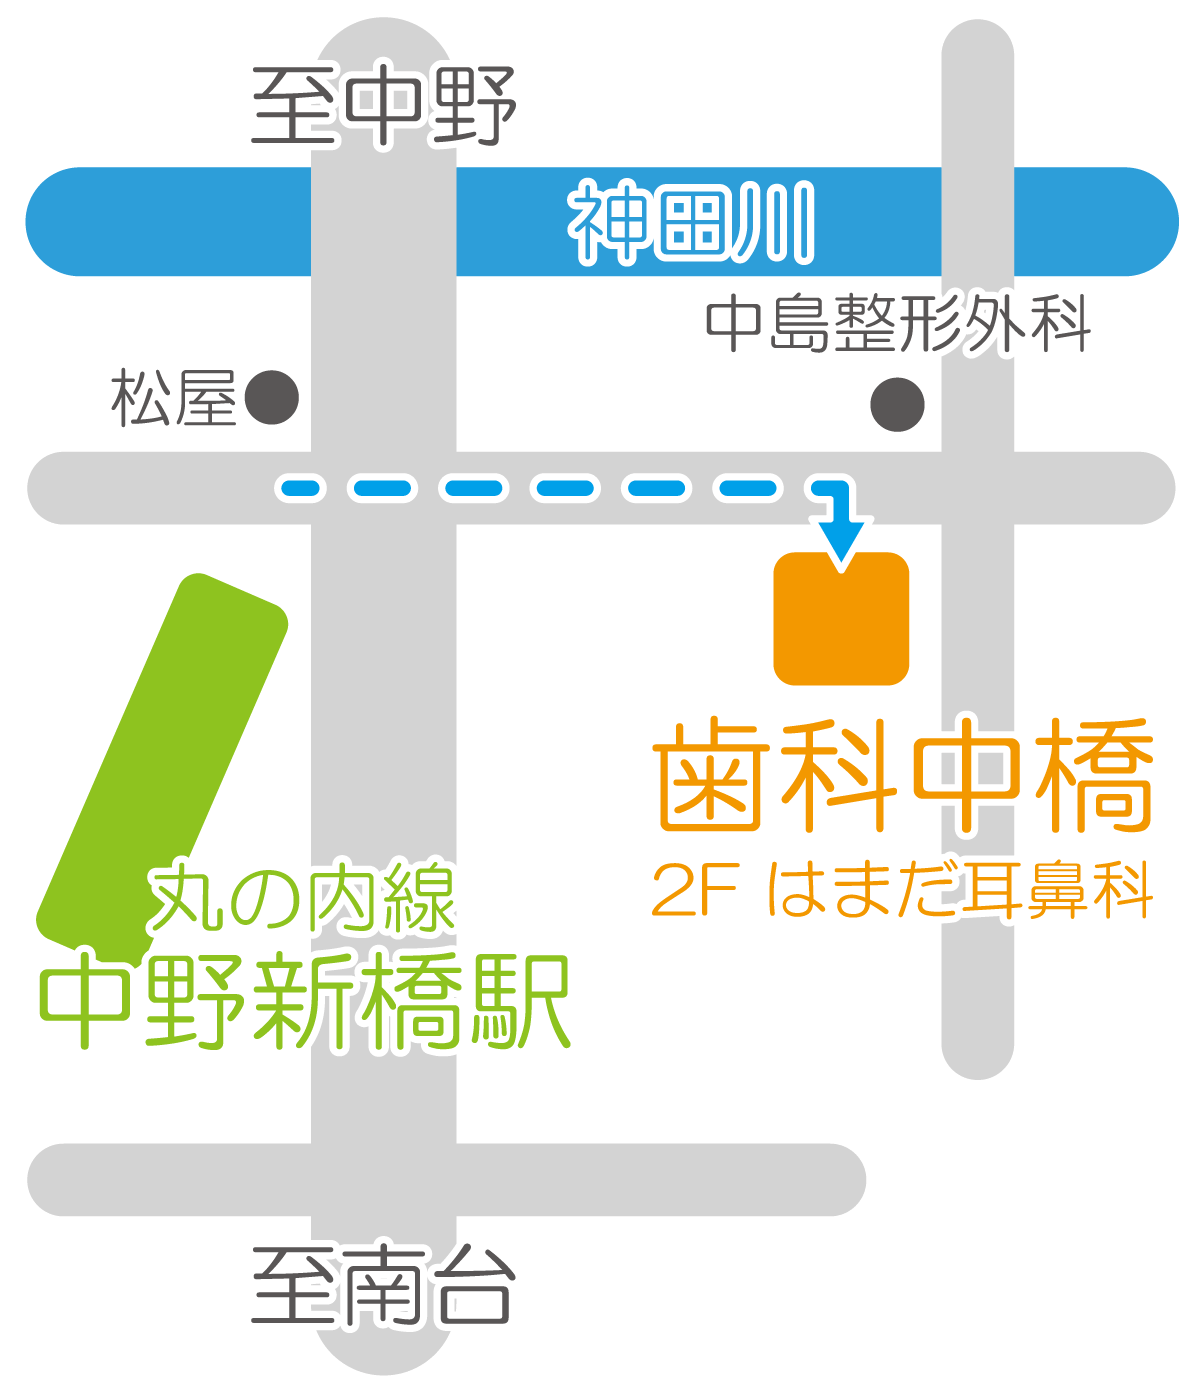 駅から歯科中橋までの地図